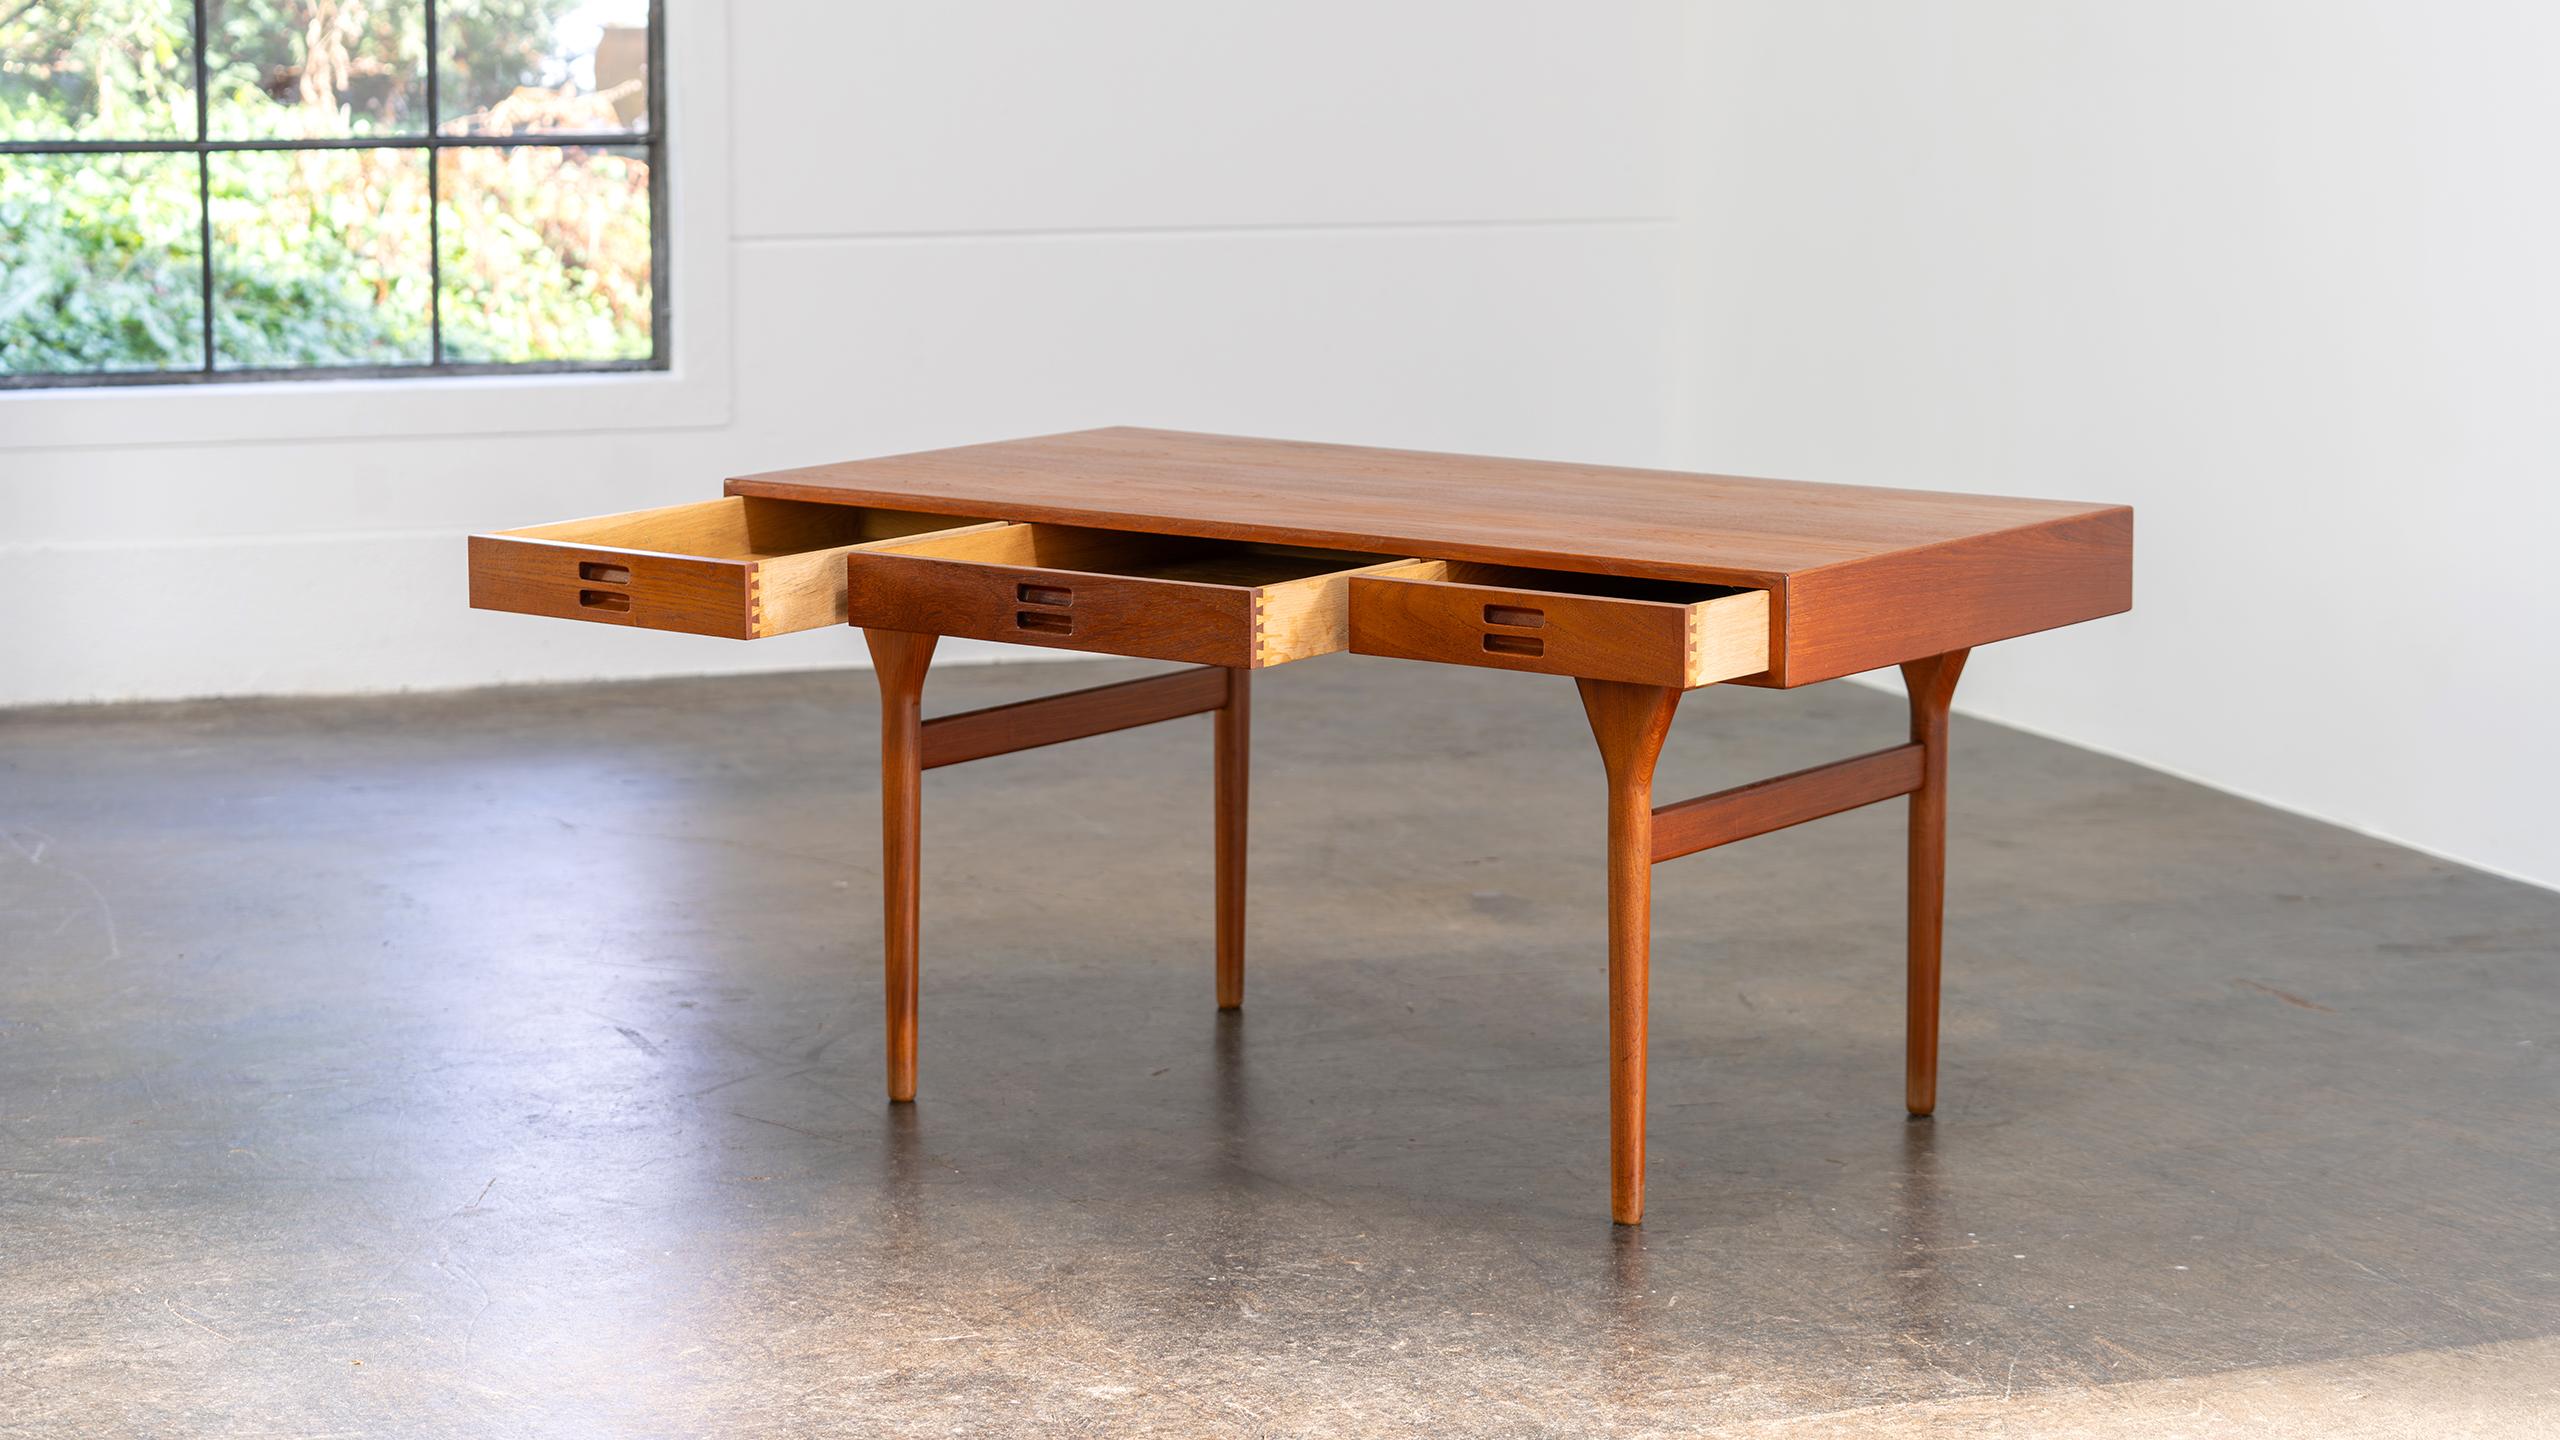 Nanna Ditzel Table Desk in Teak Søren Willadsen 1958 Denmark Mid Century Modern For Sale 4